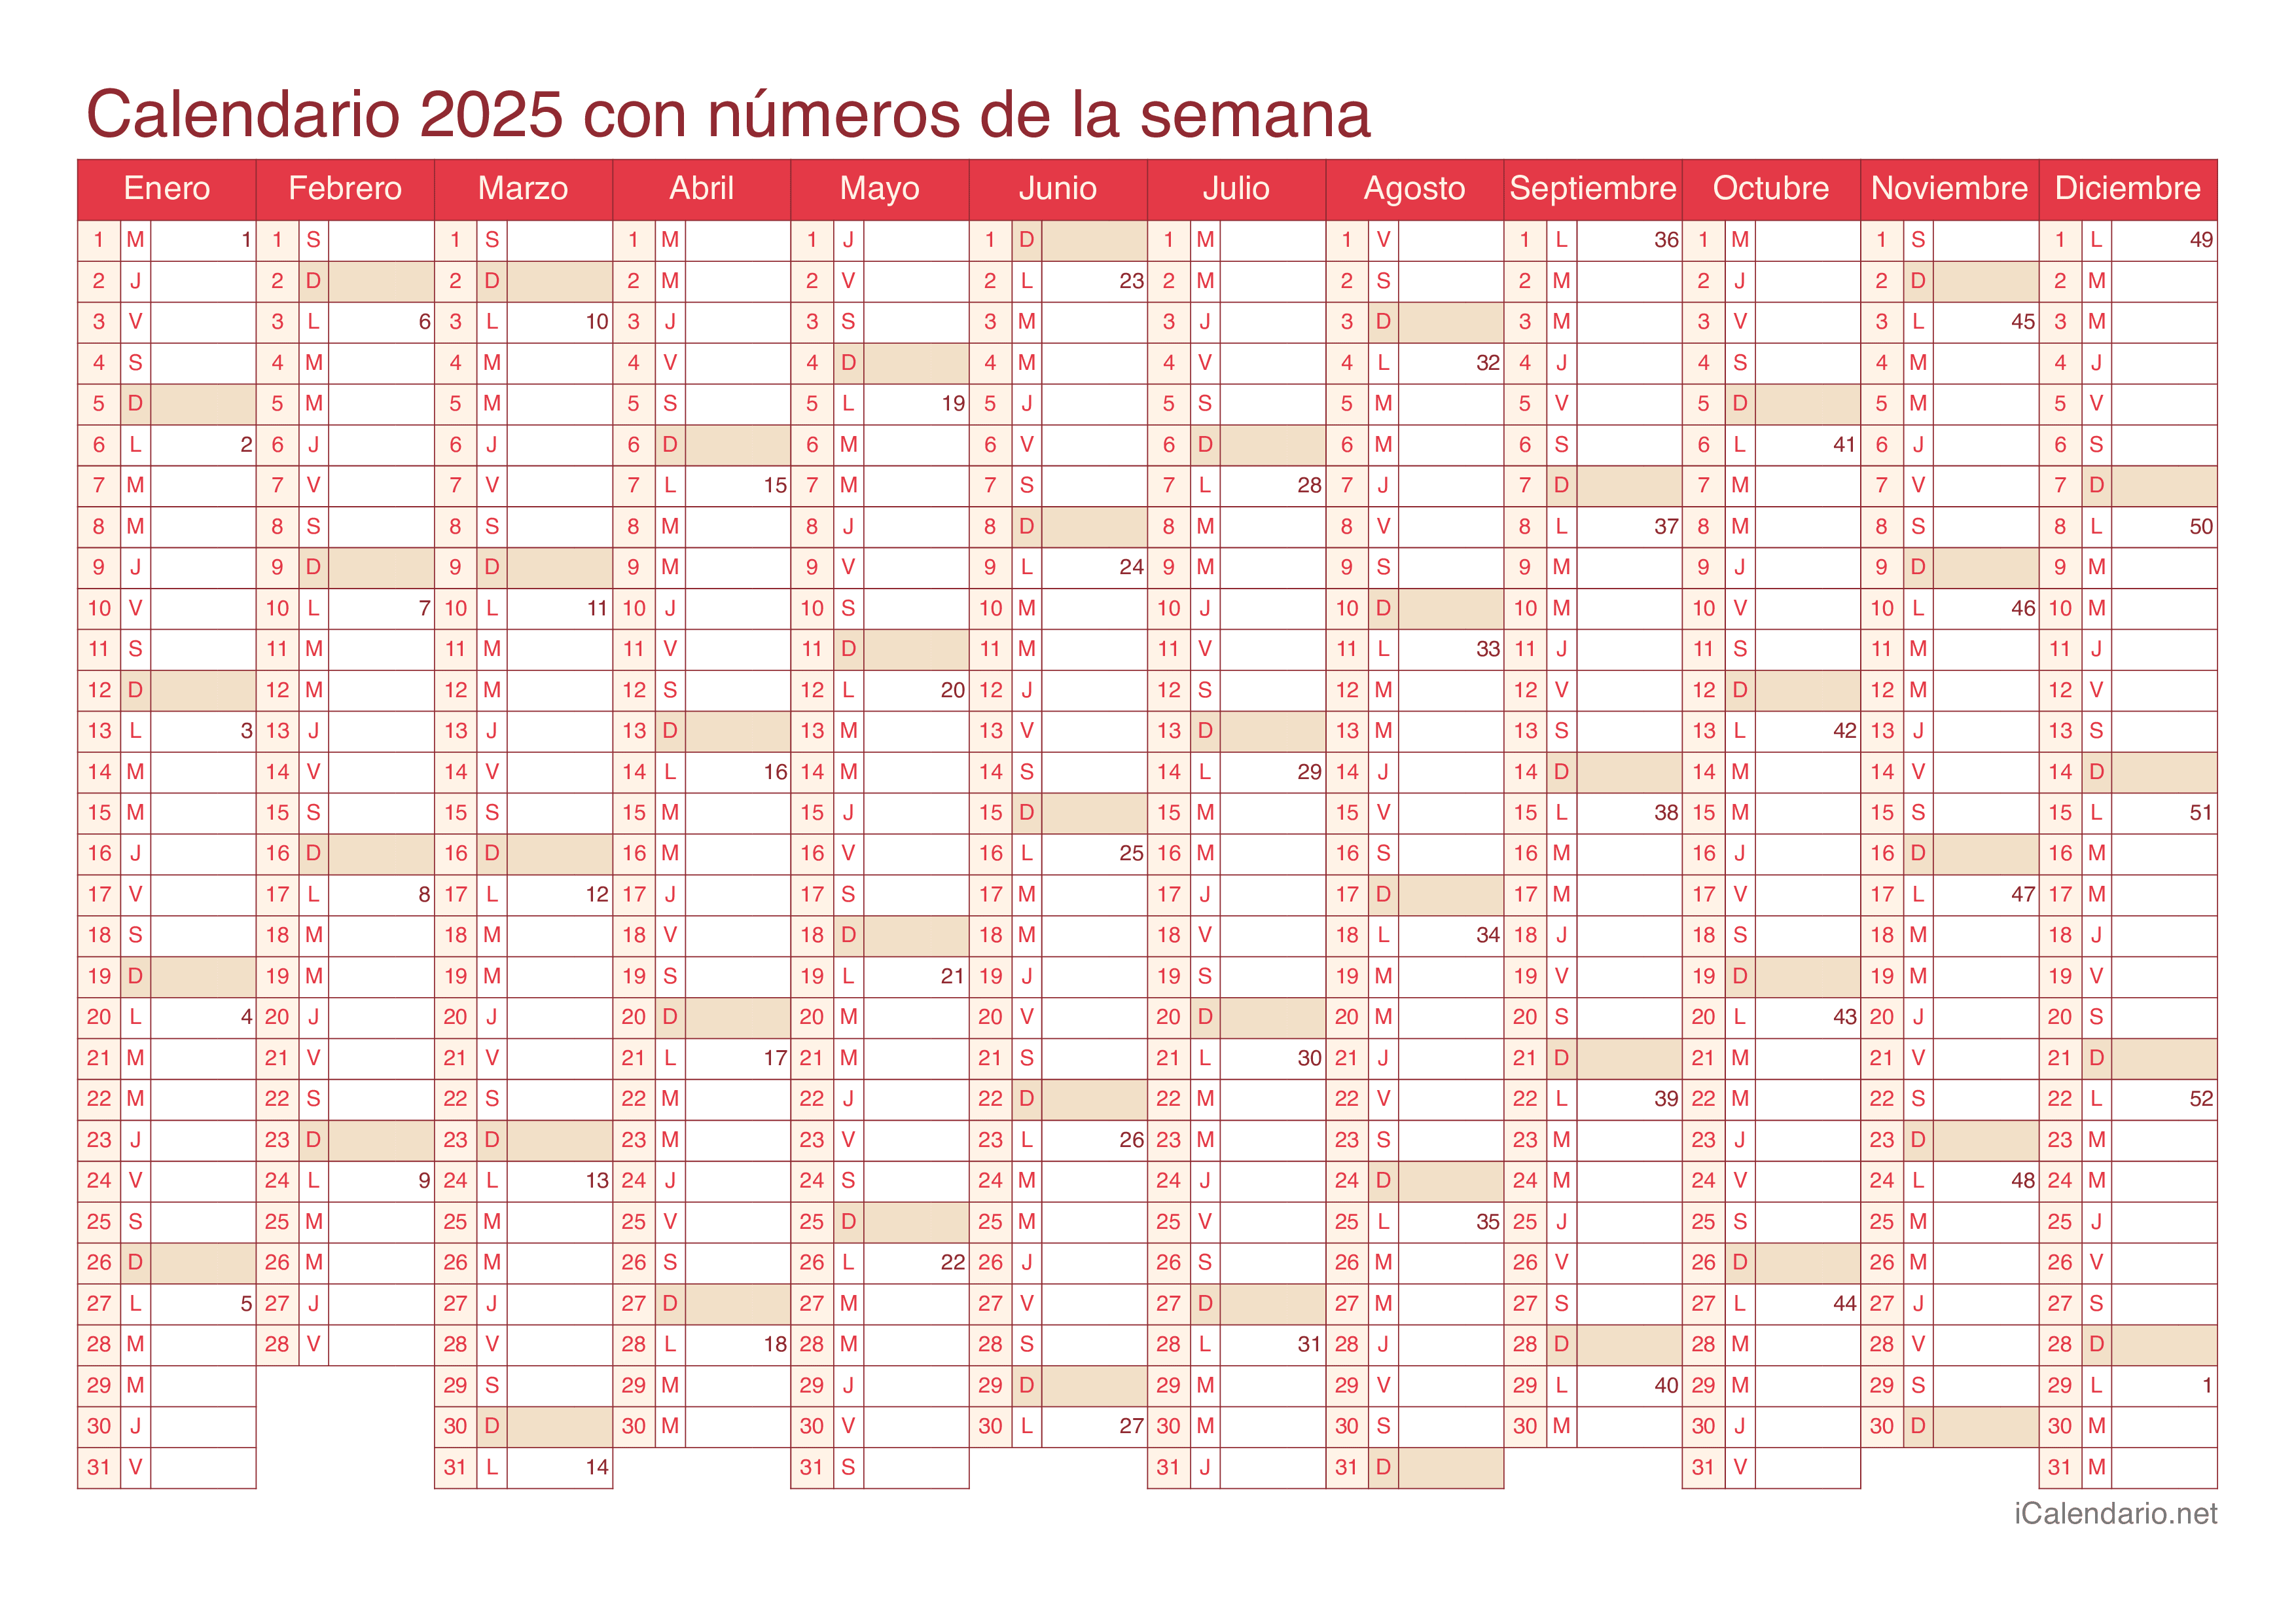 Calendario 2025 con números de semana - Cherry